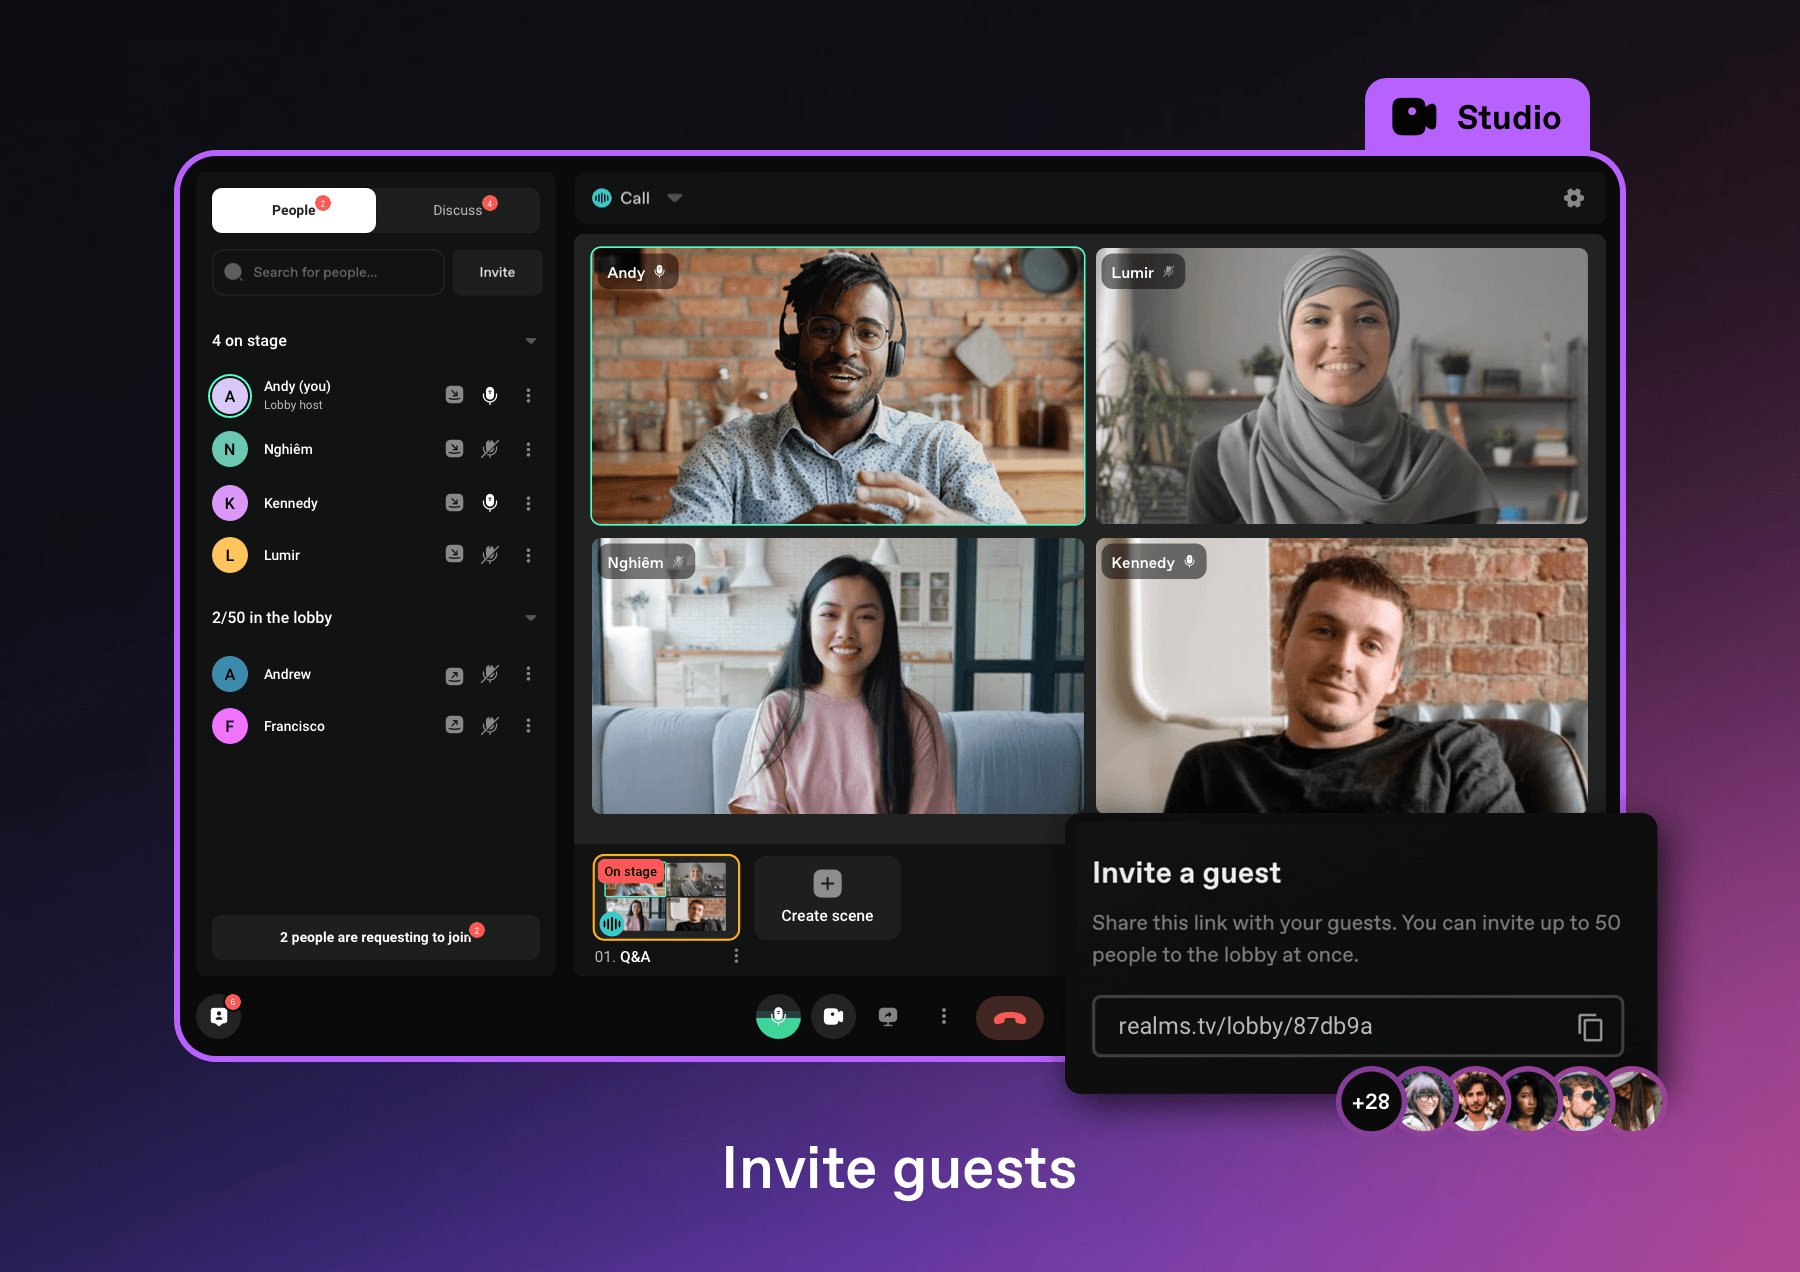 Invite guests